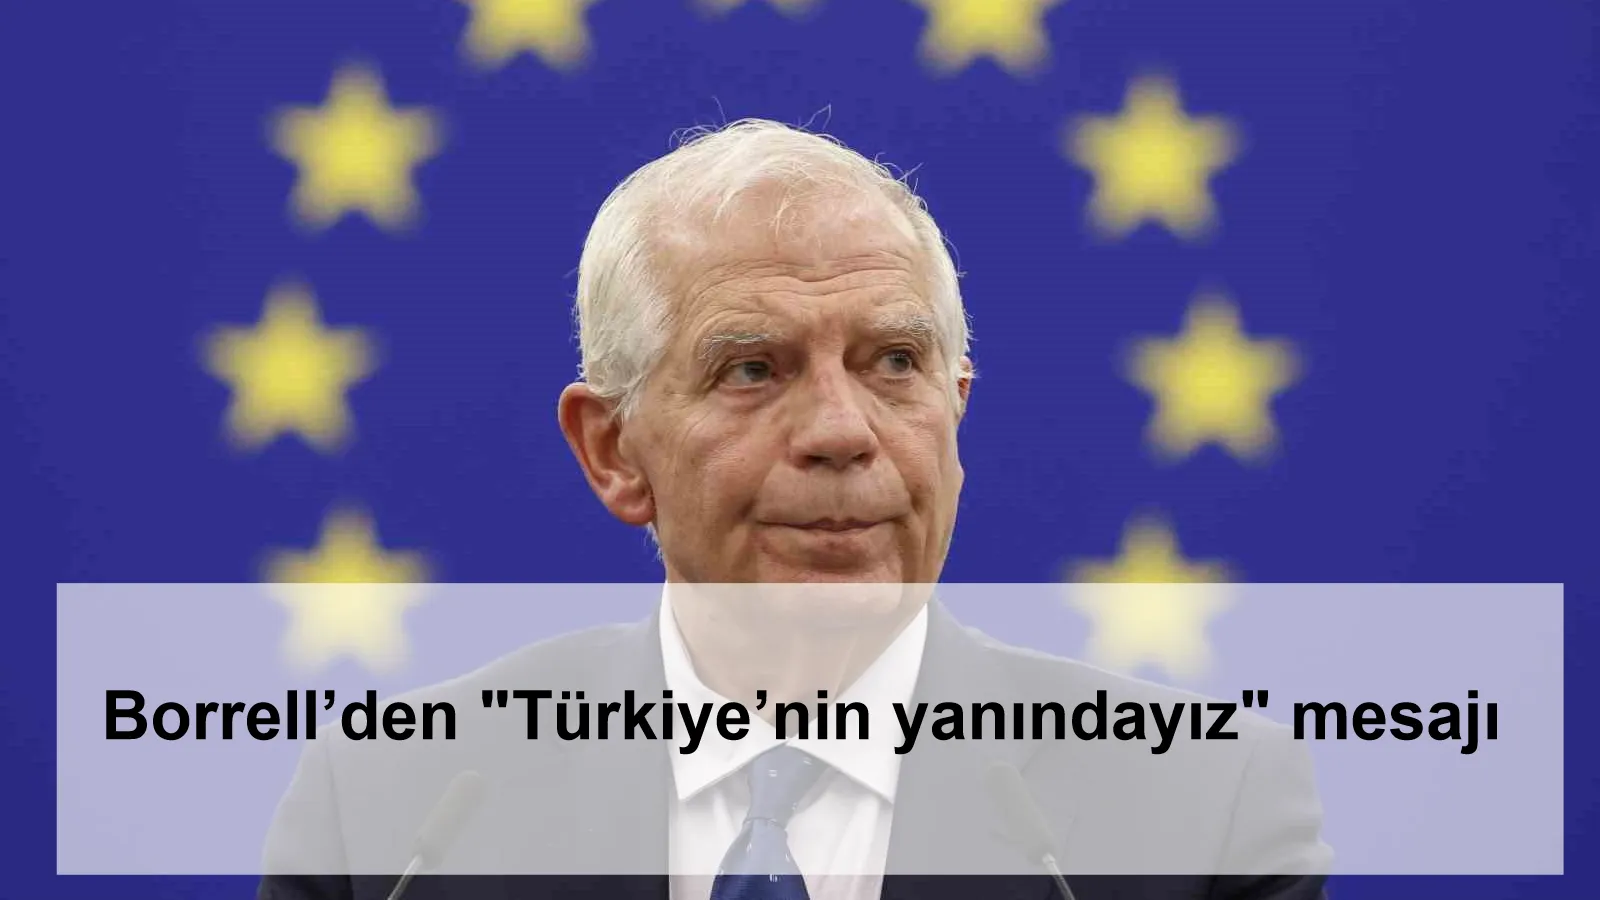 Borrell’den "Türkiye’nin yanındayız" mesajı